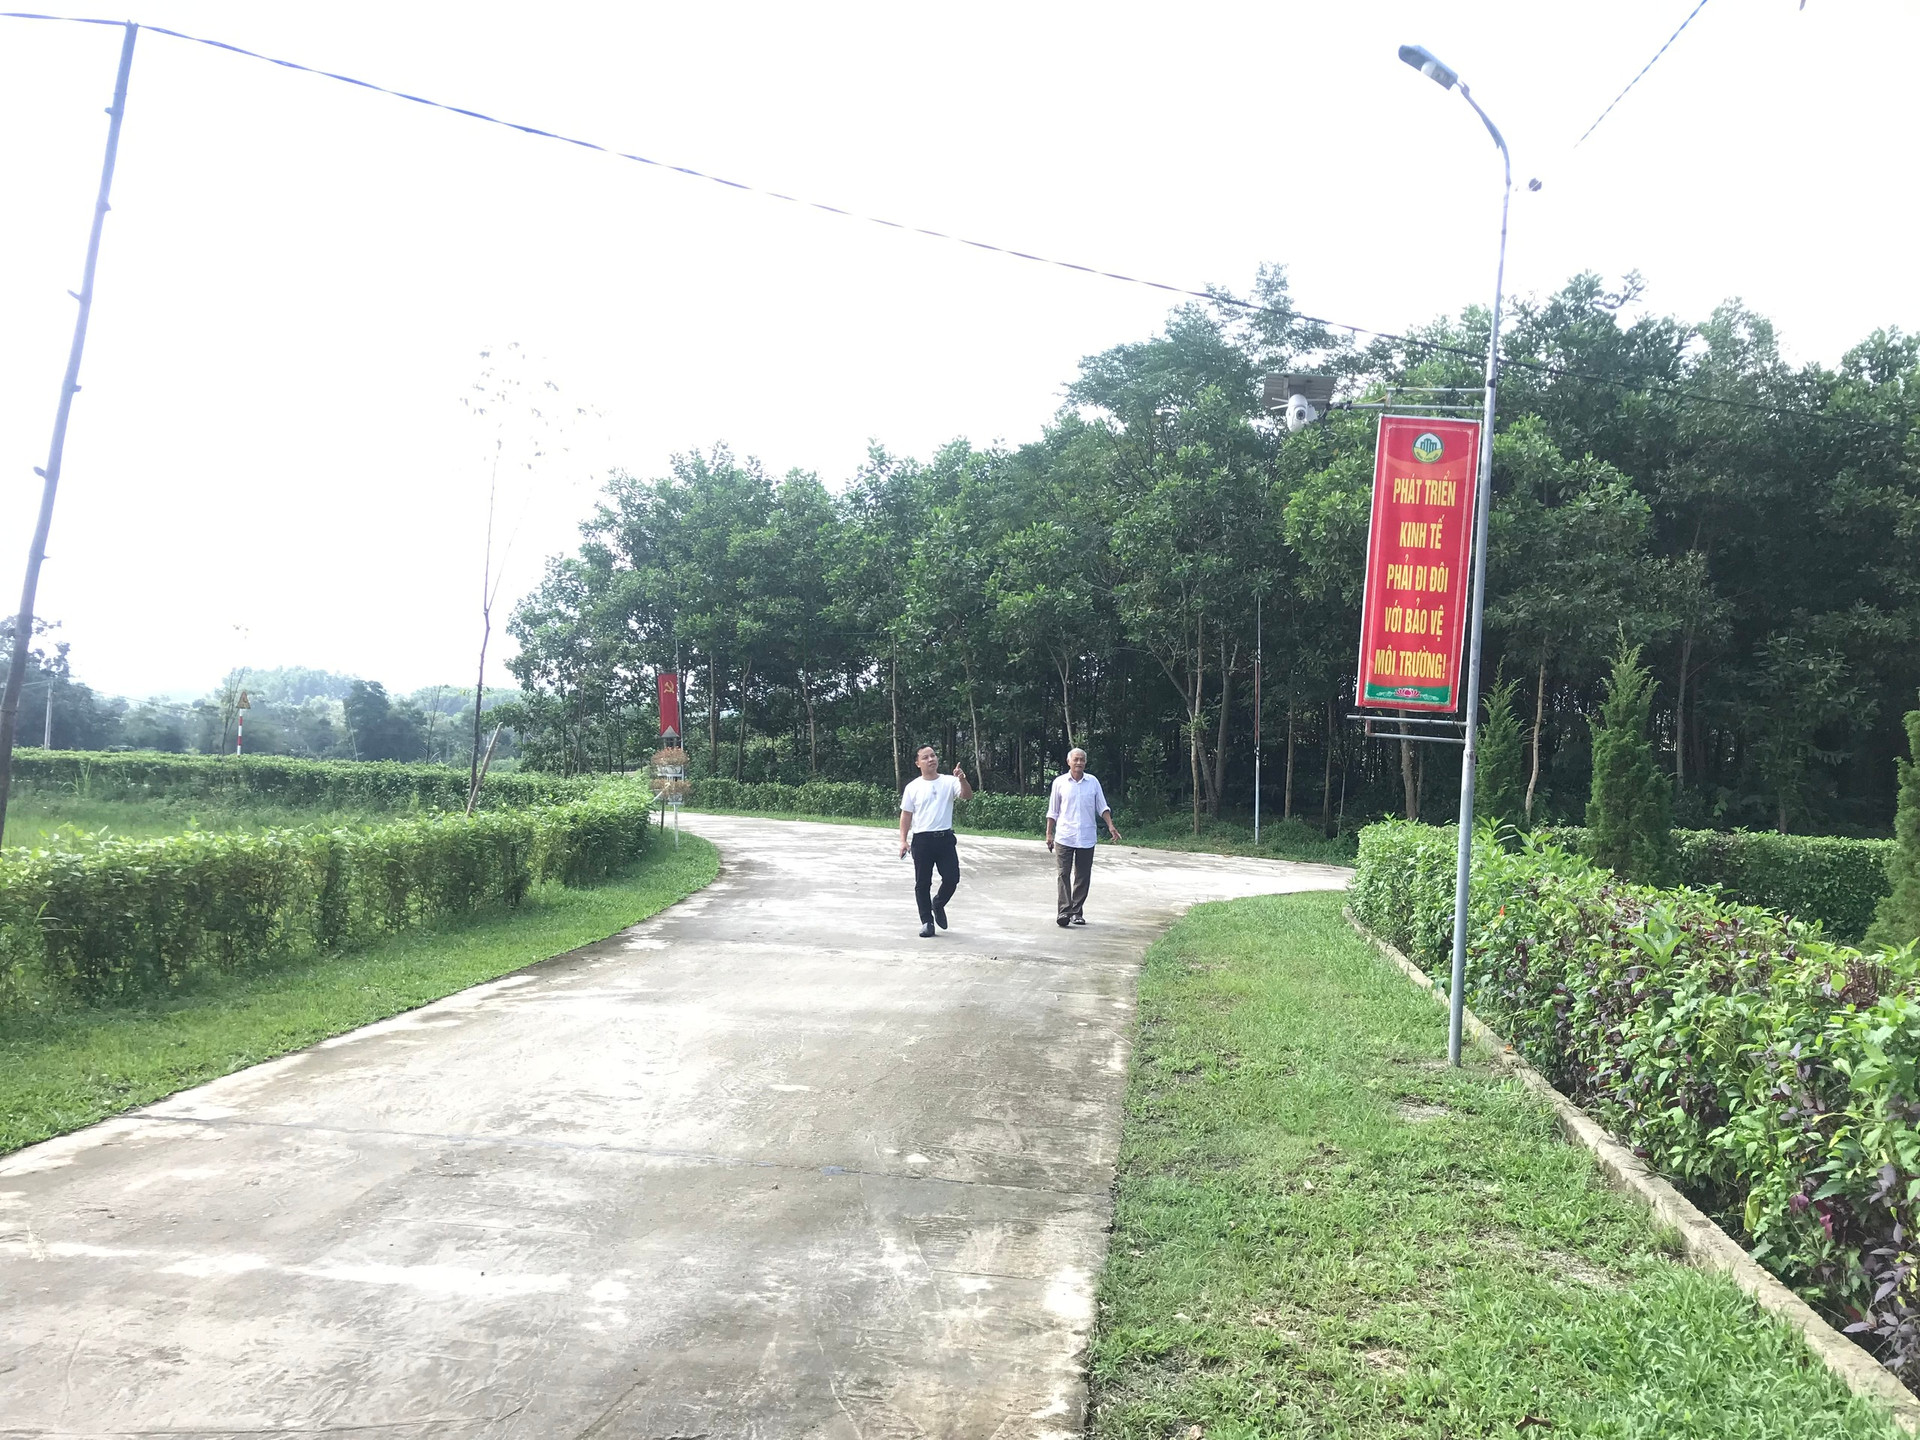 Mô hình “khu dân cư thông minh” đầu tiên của tỉnh Hà Tĩnh được triển khai ở thôn 9, xã Sơn Trường, huyện Hương Sơn.